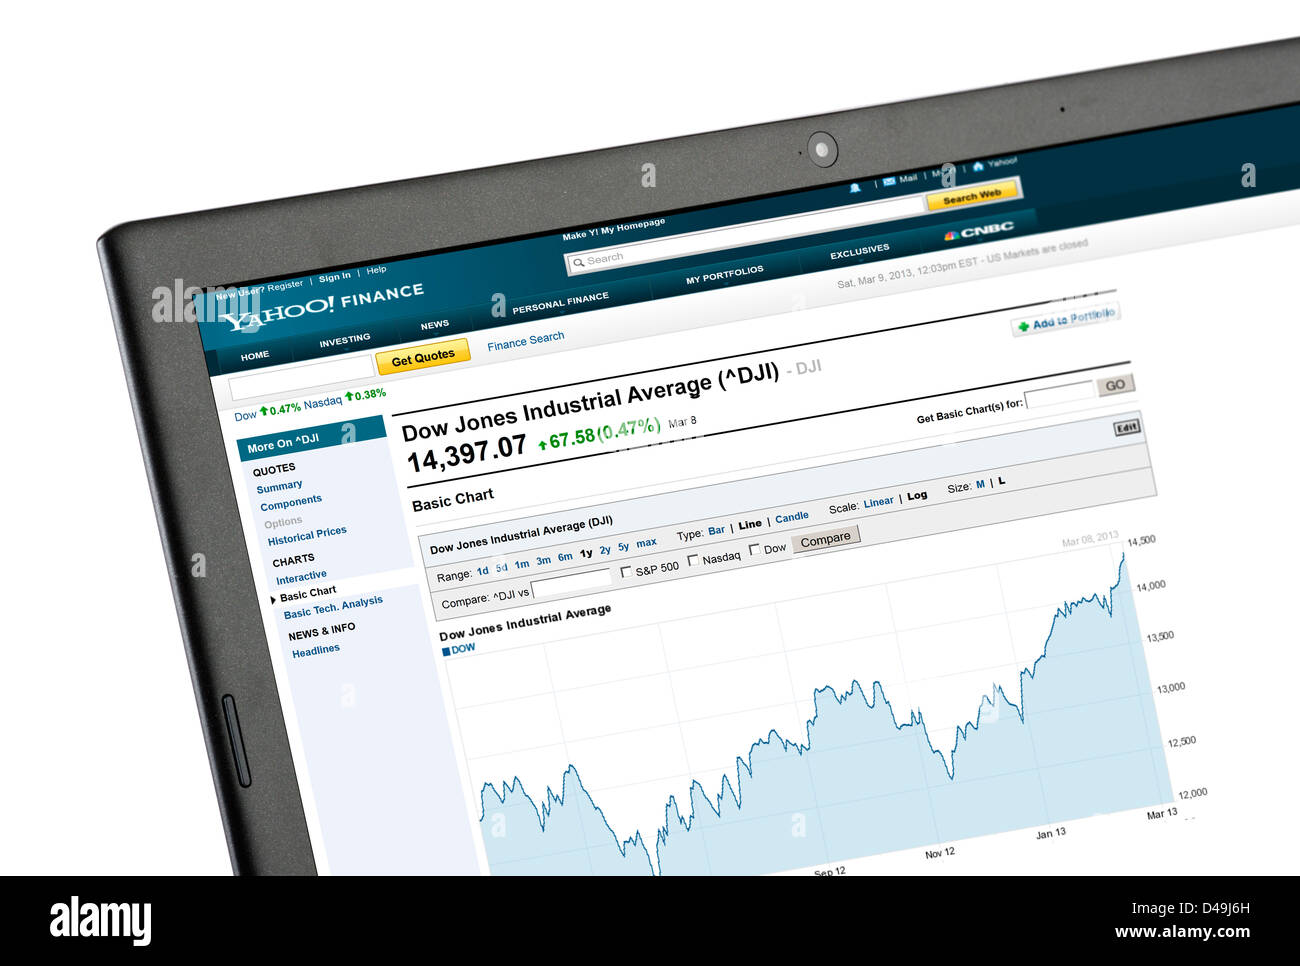 Yahoo Finance tableau montrant l'augmentation de l'indice Dow Jones jusqu'au 8 mars 2013 sur une période d'un an Banque D'Images